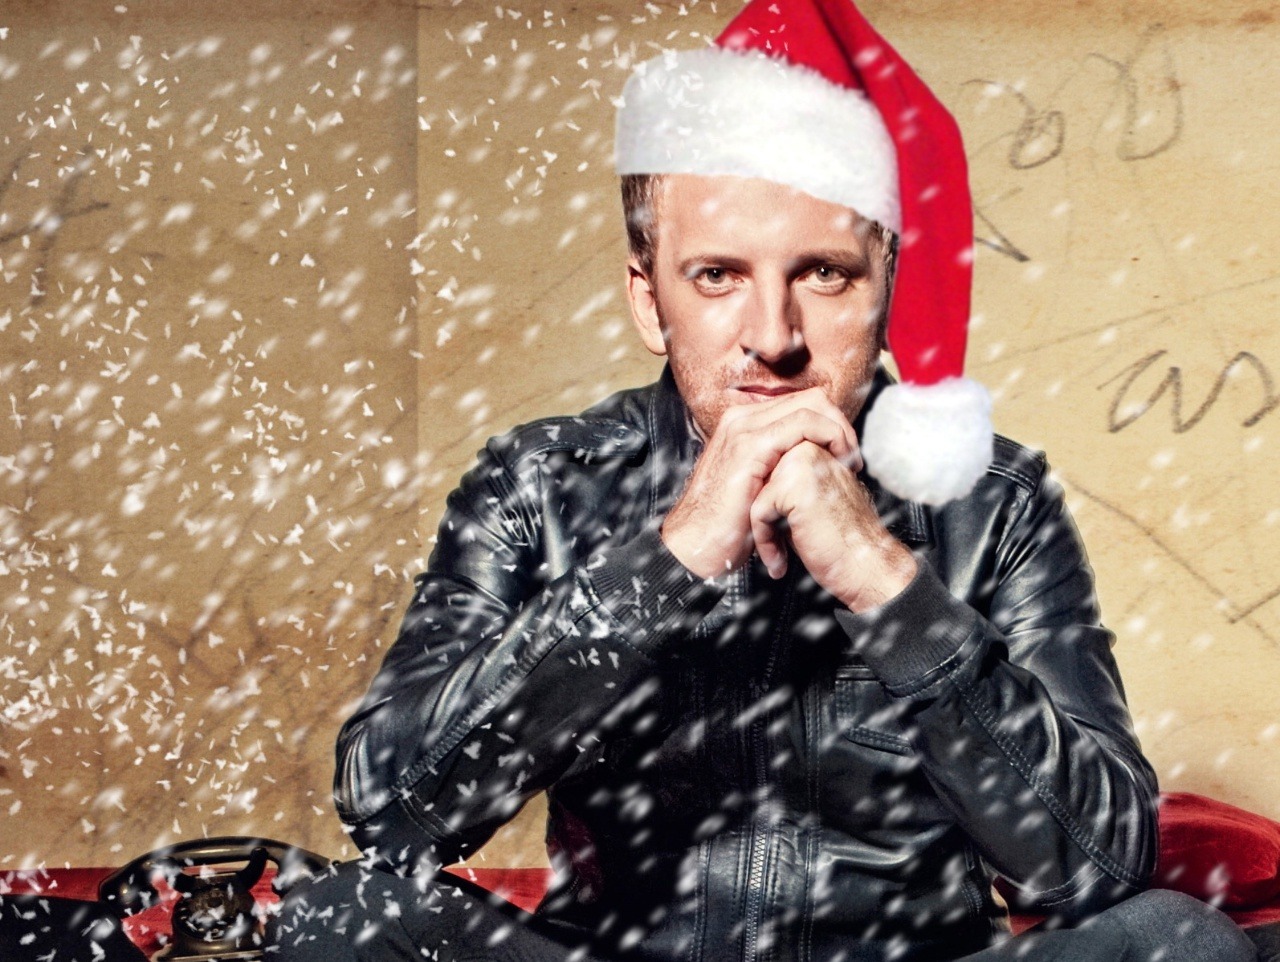 Miro Jaroš predstavil na topkách nový vianočný klip, do ktorého ste sa zapojili aj vy - naši čitatelia.